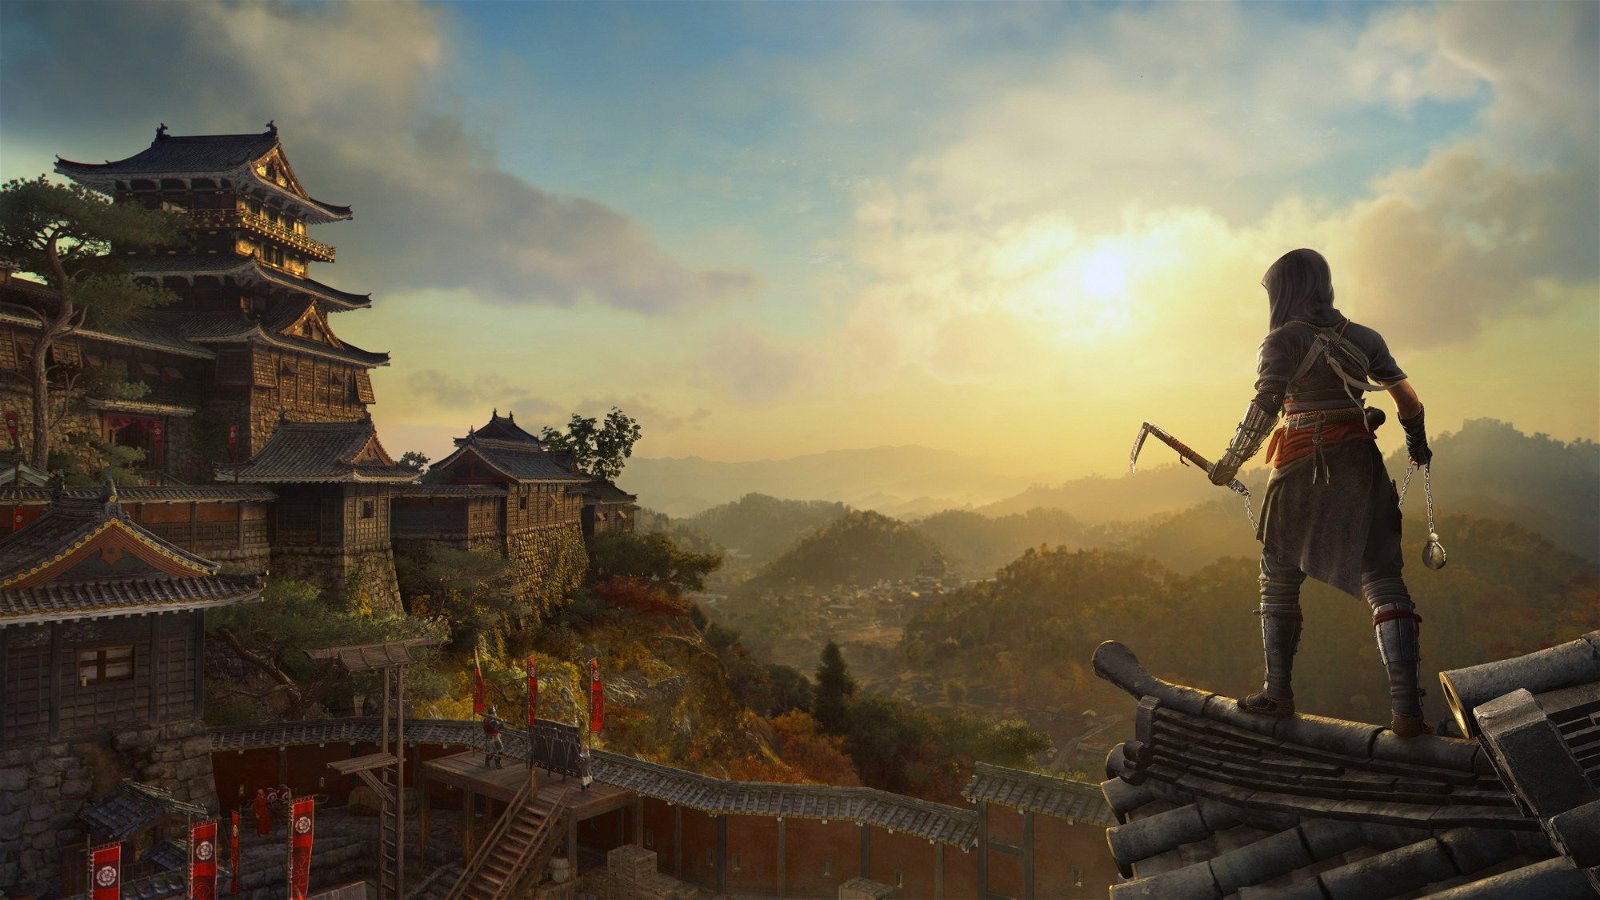 Assassin's Creed Shadows sarà il capitolo con più dettagli grafici di sempre, per Ubisoft